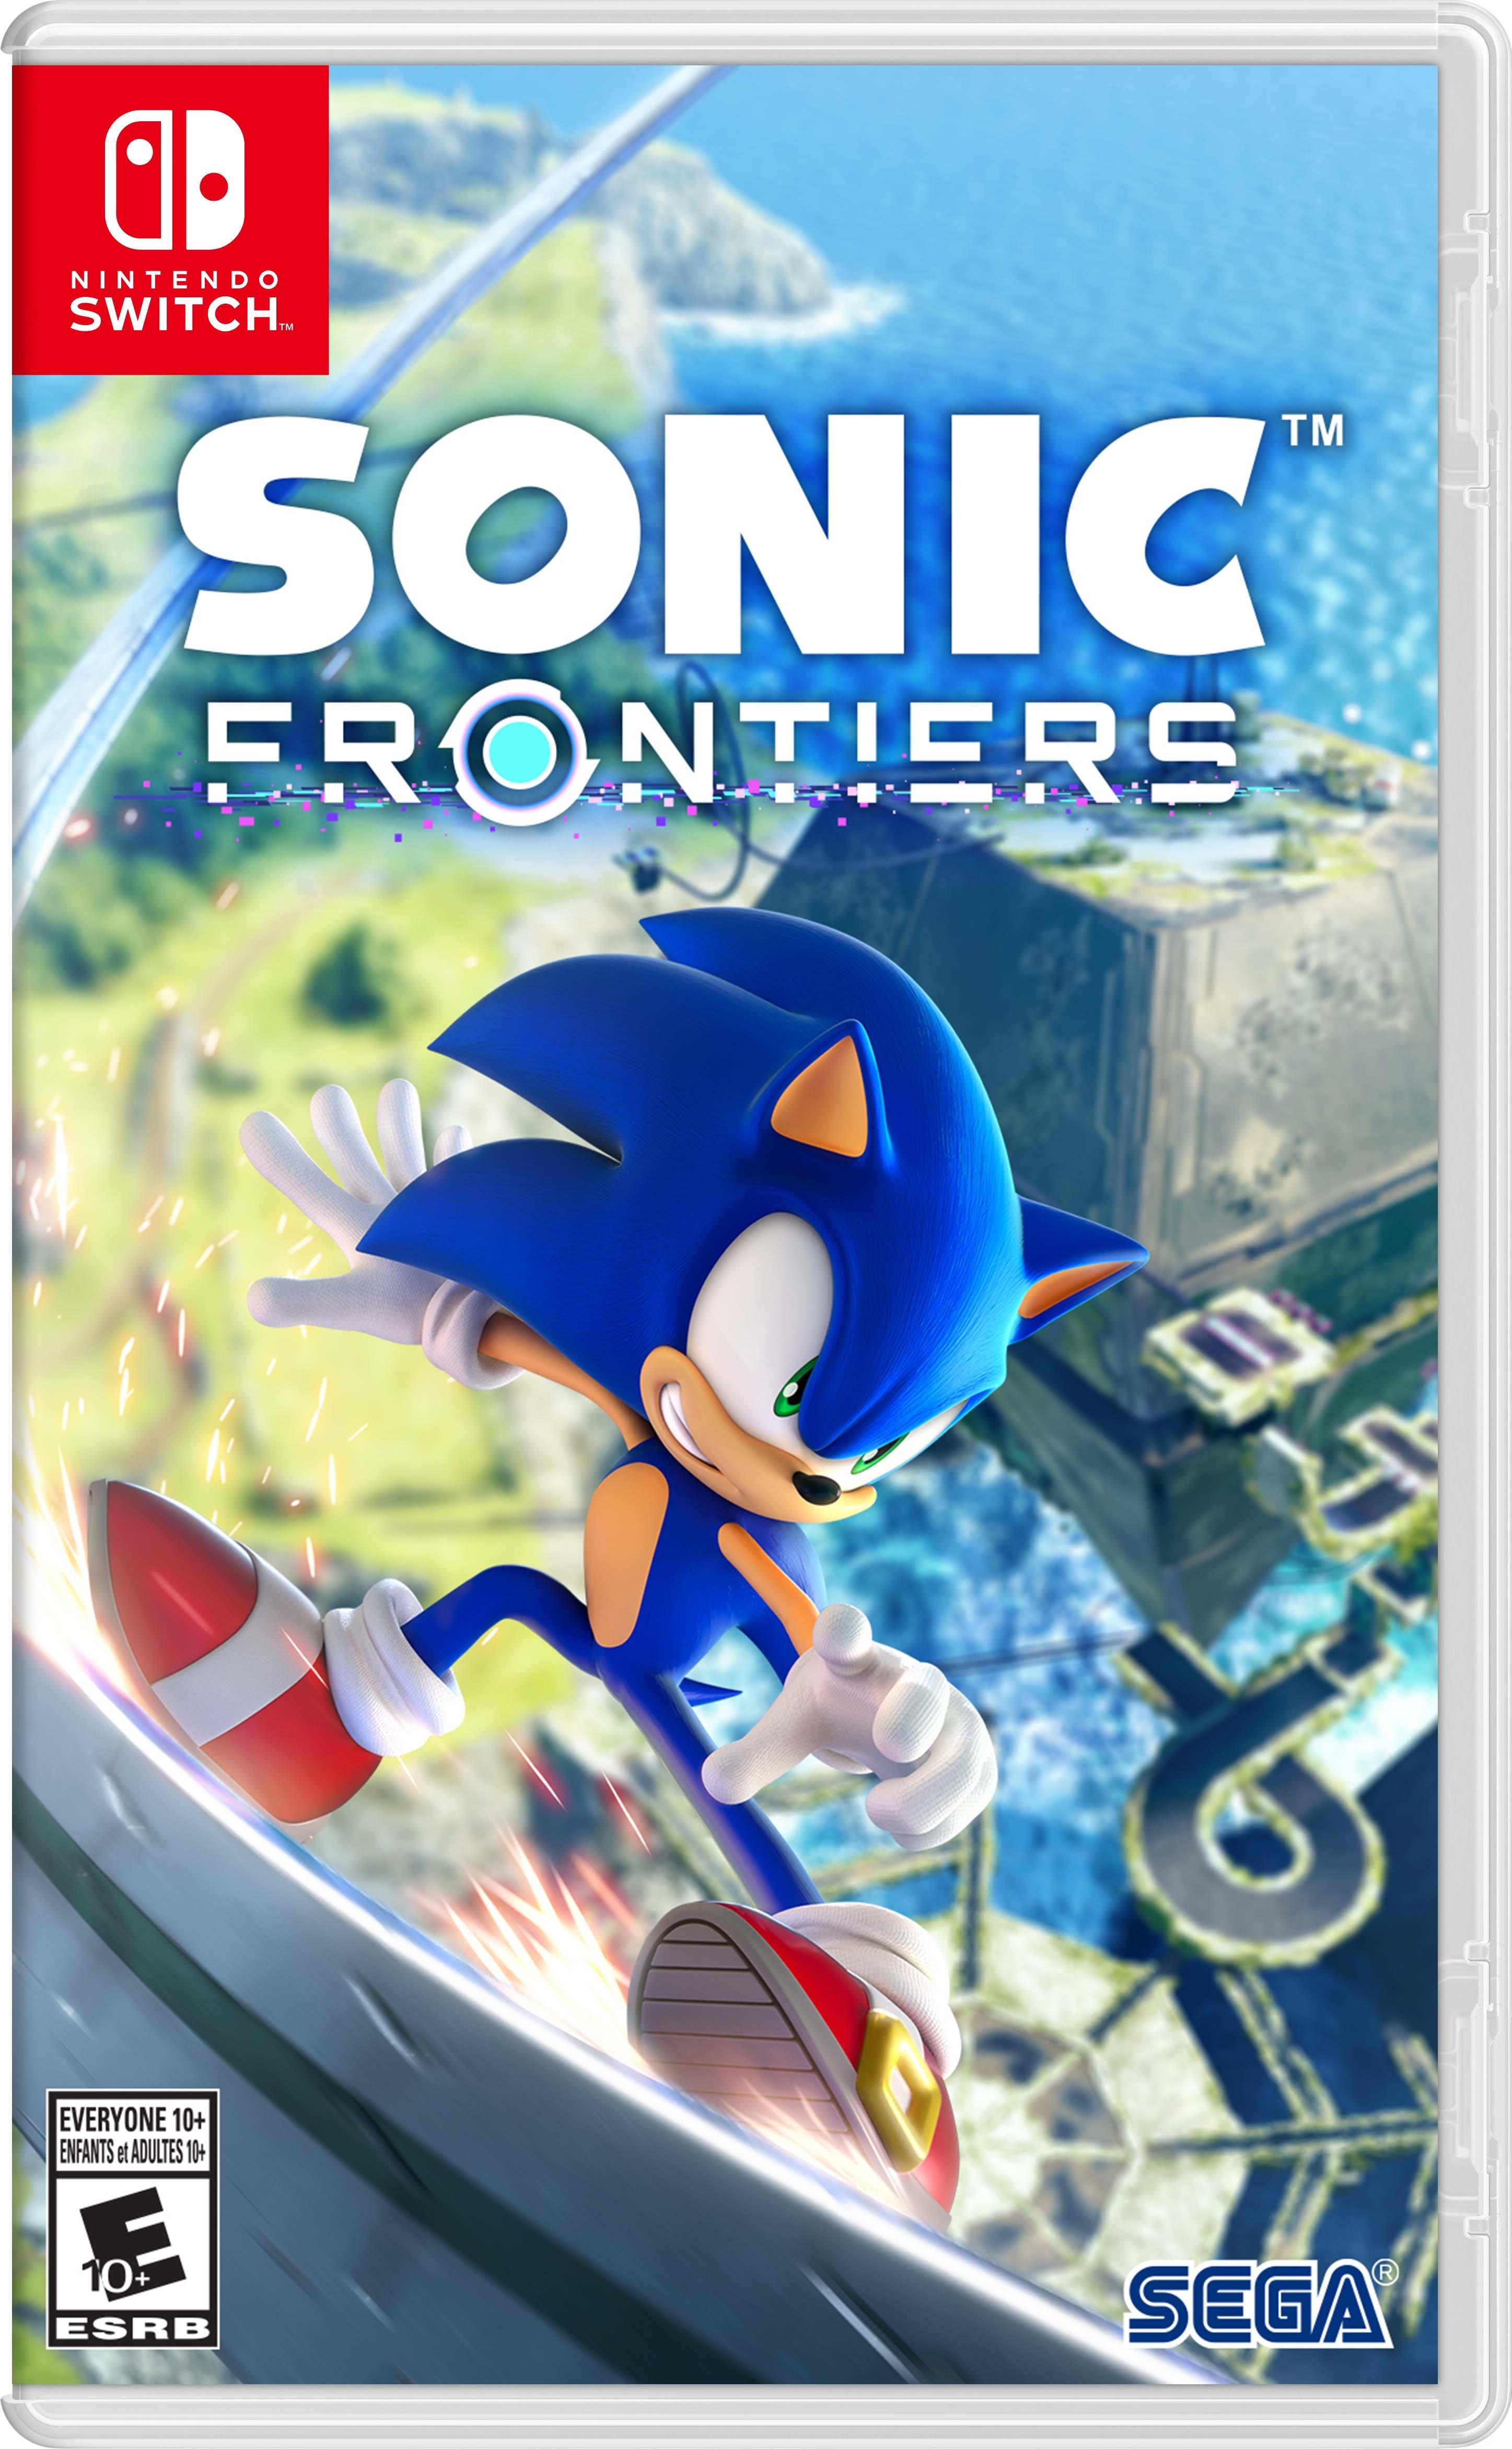 Sonic Frontiers - Nintendo Switch (SEGA), Digital - GameStop